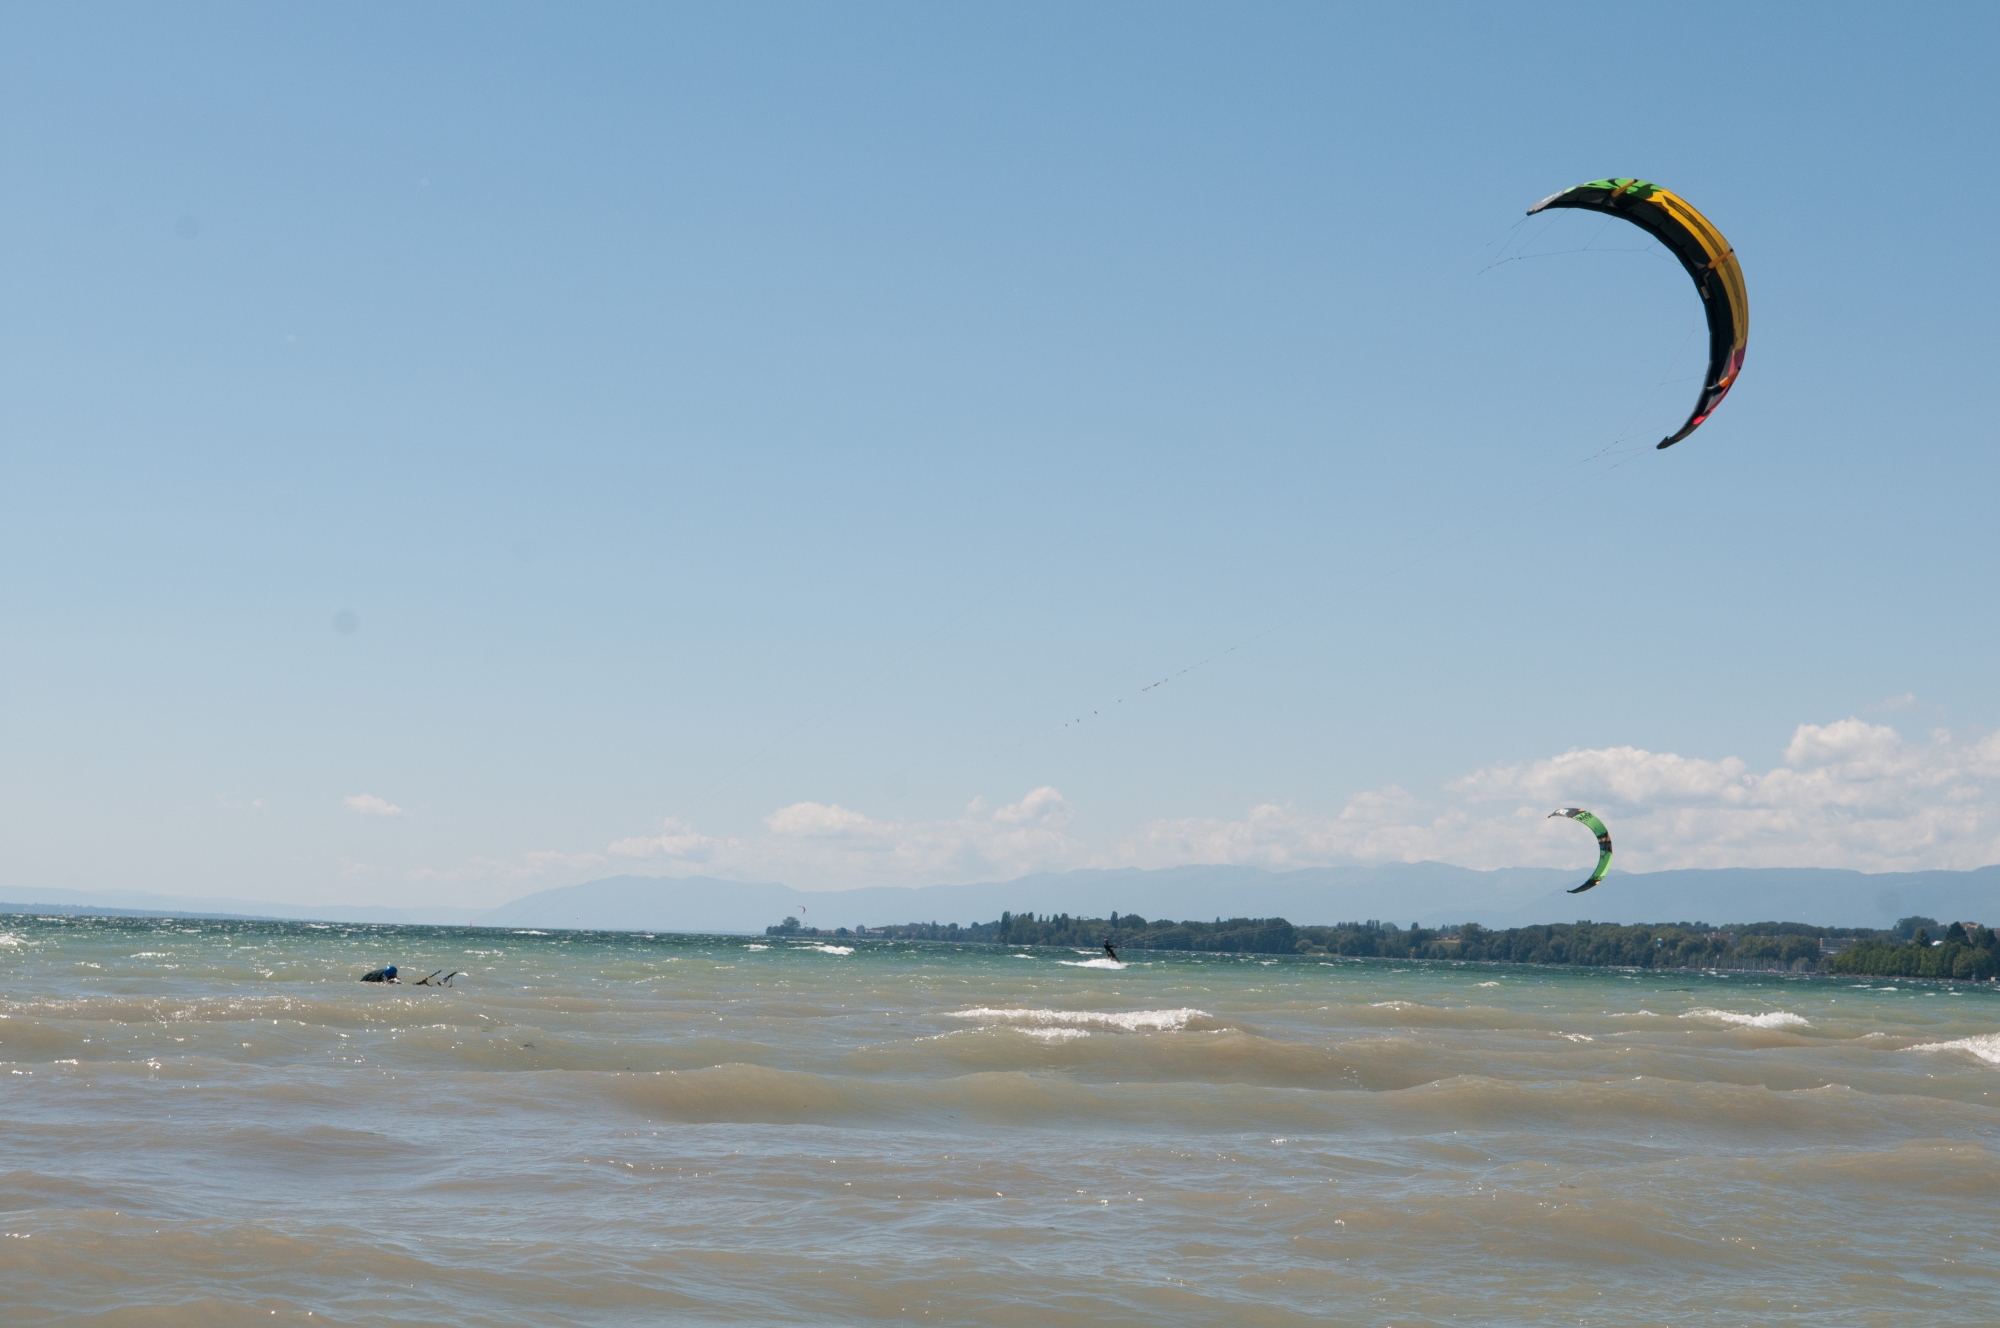 Après plus d'une heure sur le lac à rechercher vainement le kitesurfeur, le Sauvetage de Nyon n'a pu récupérer que la voile.